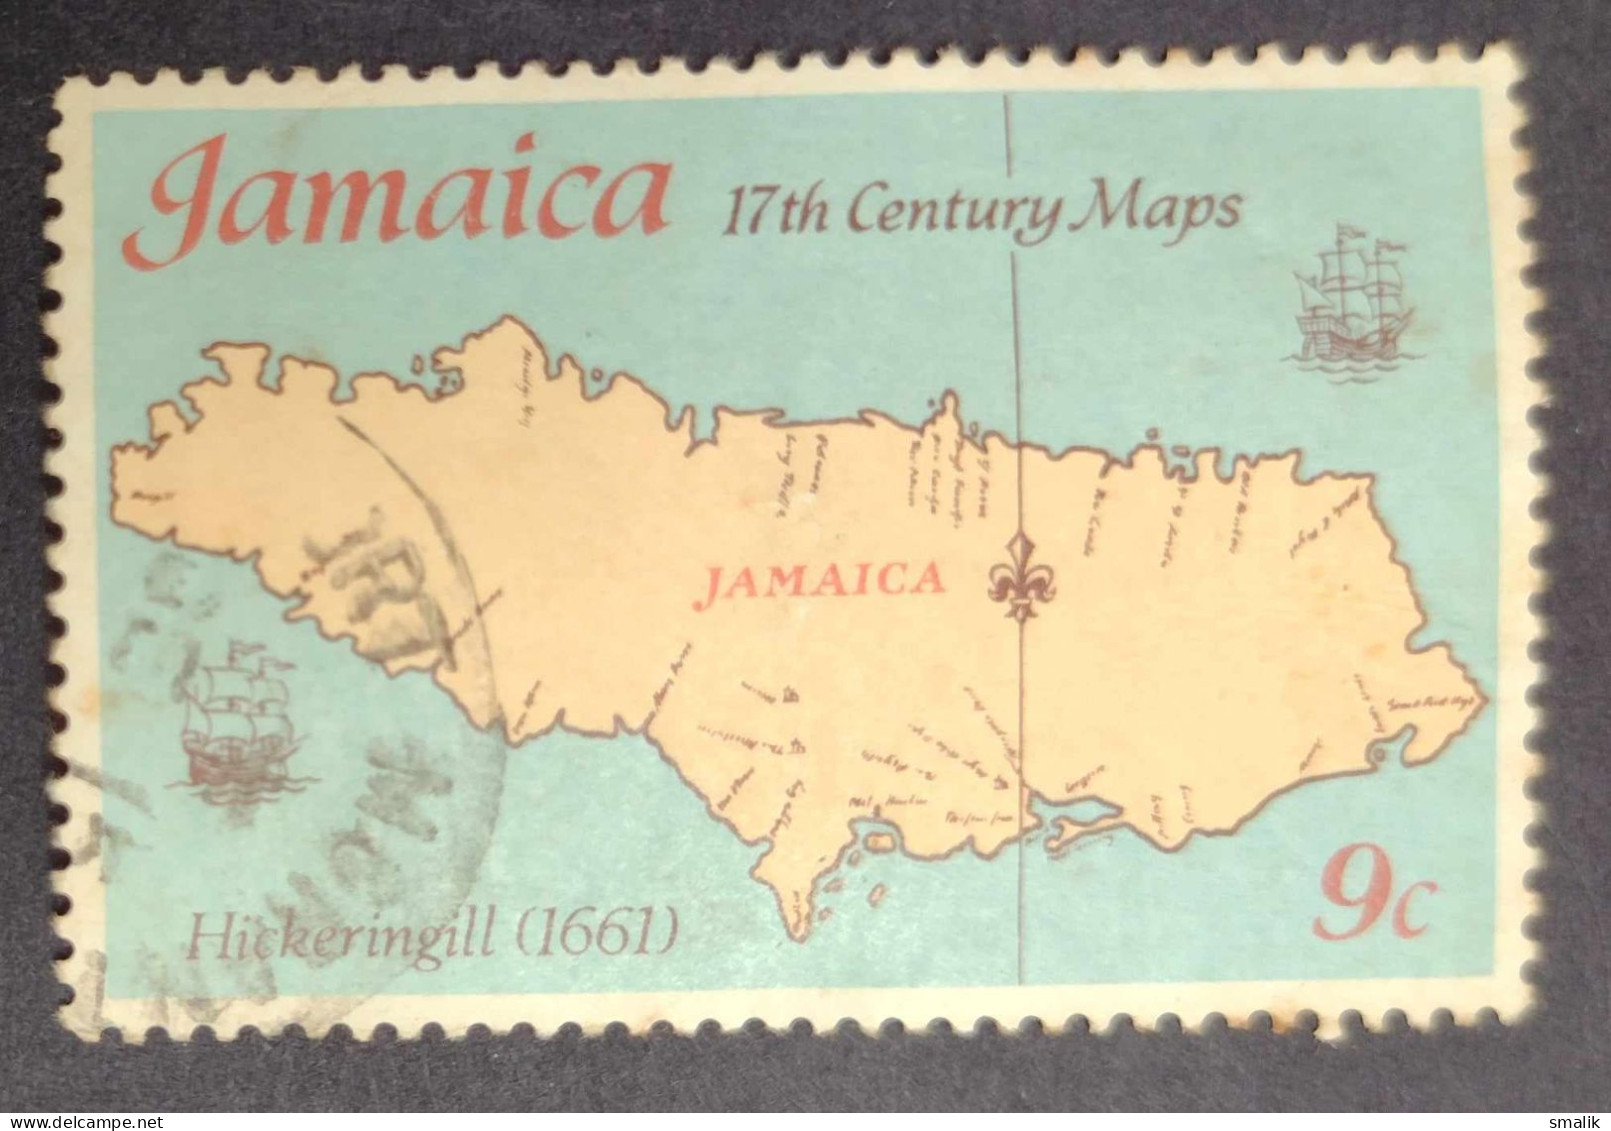 JAMAICA 1977 - 17th Century Map, Hickeringill. Fine Used - Jamaica (1962-...)